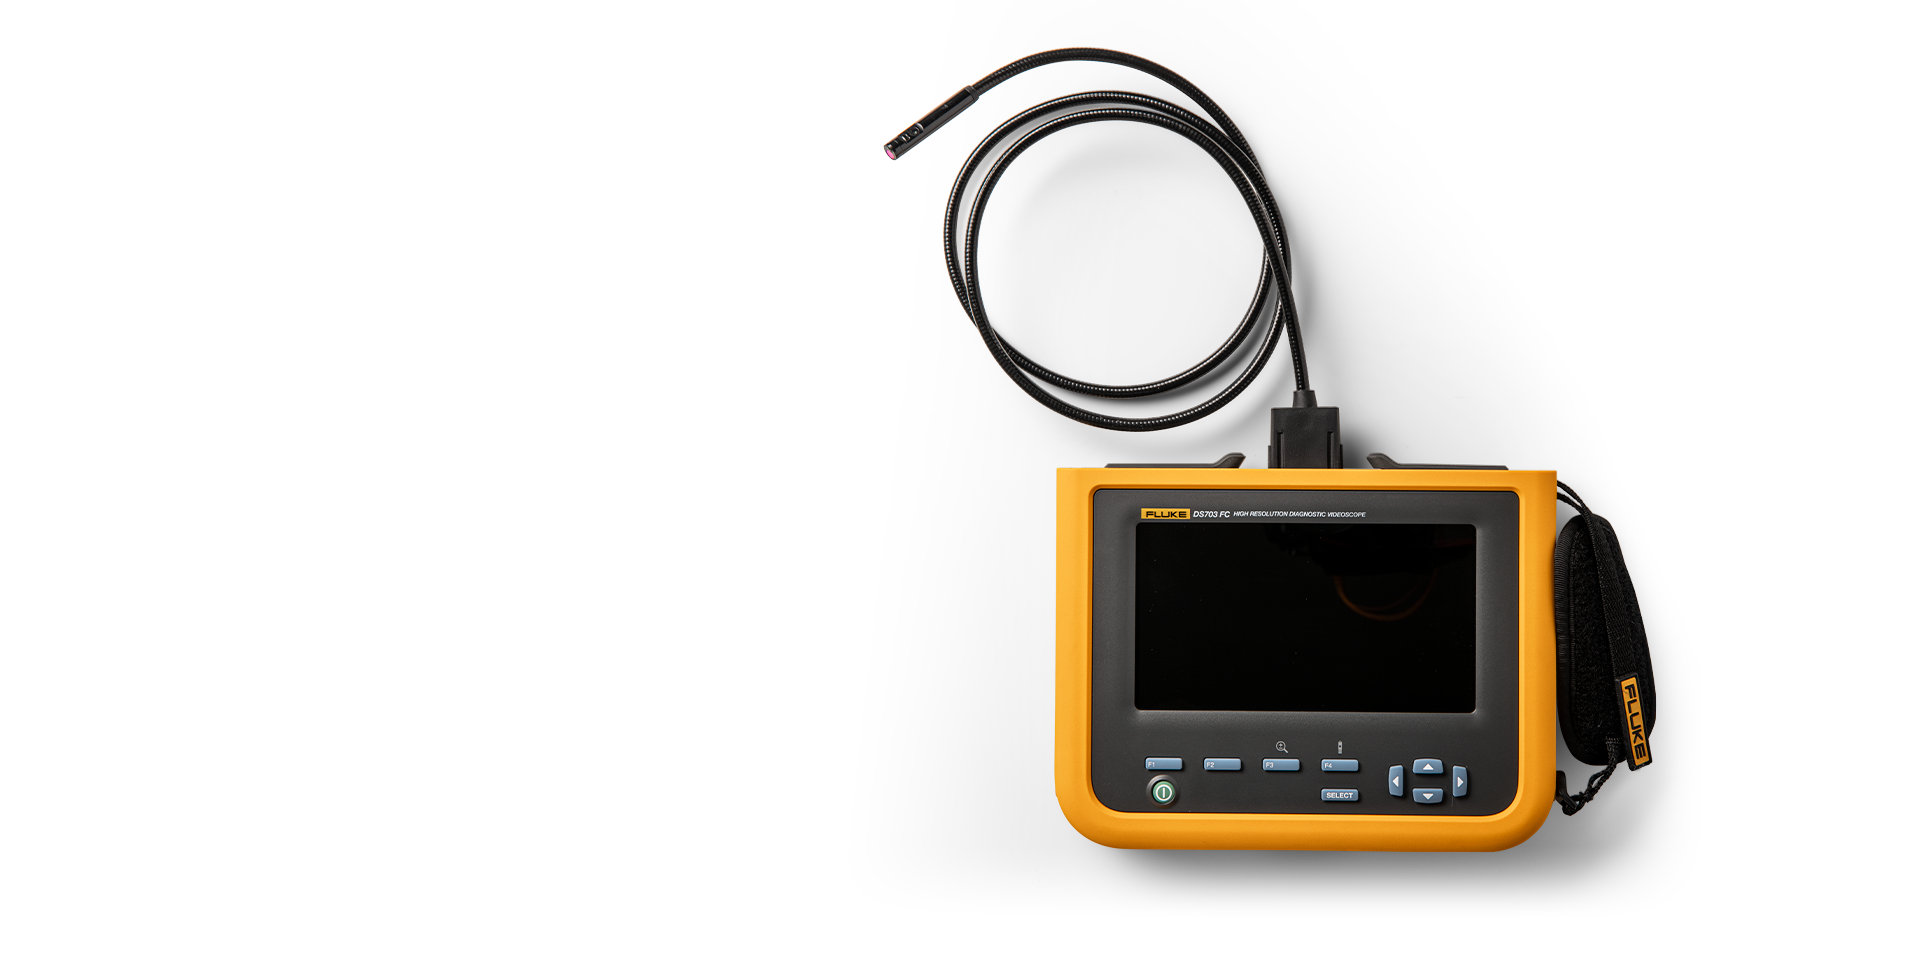 DS 701 – Caméra d'inspection résolution 800x600 – Fluke Endoscopes